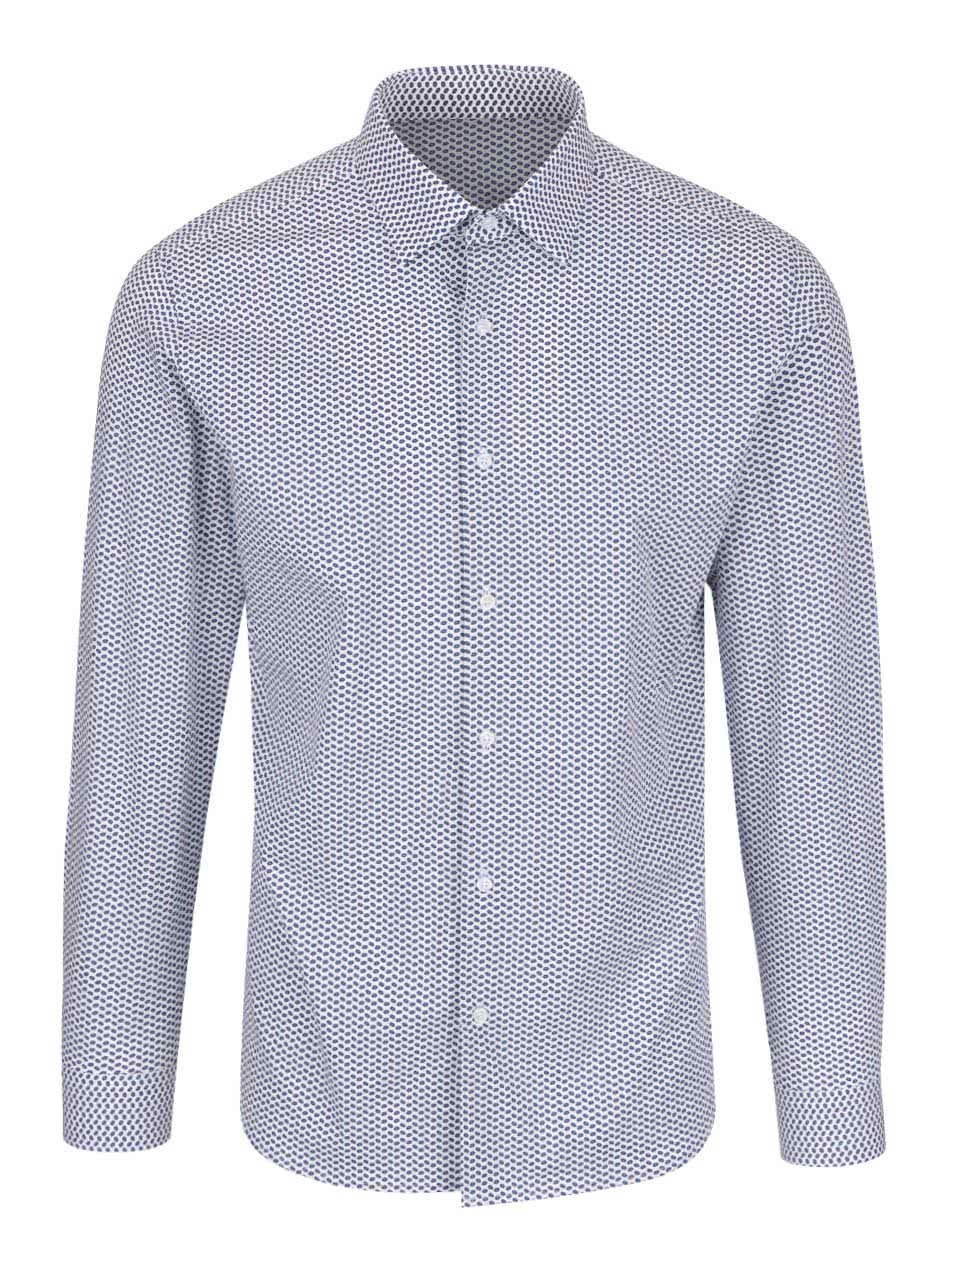 Bílá slim fit košile s tmavě modrým vzorem Selected Homme Nepen Bury